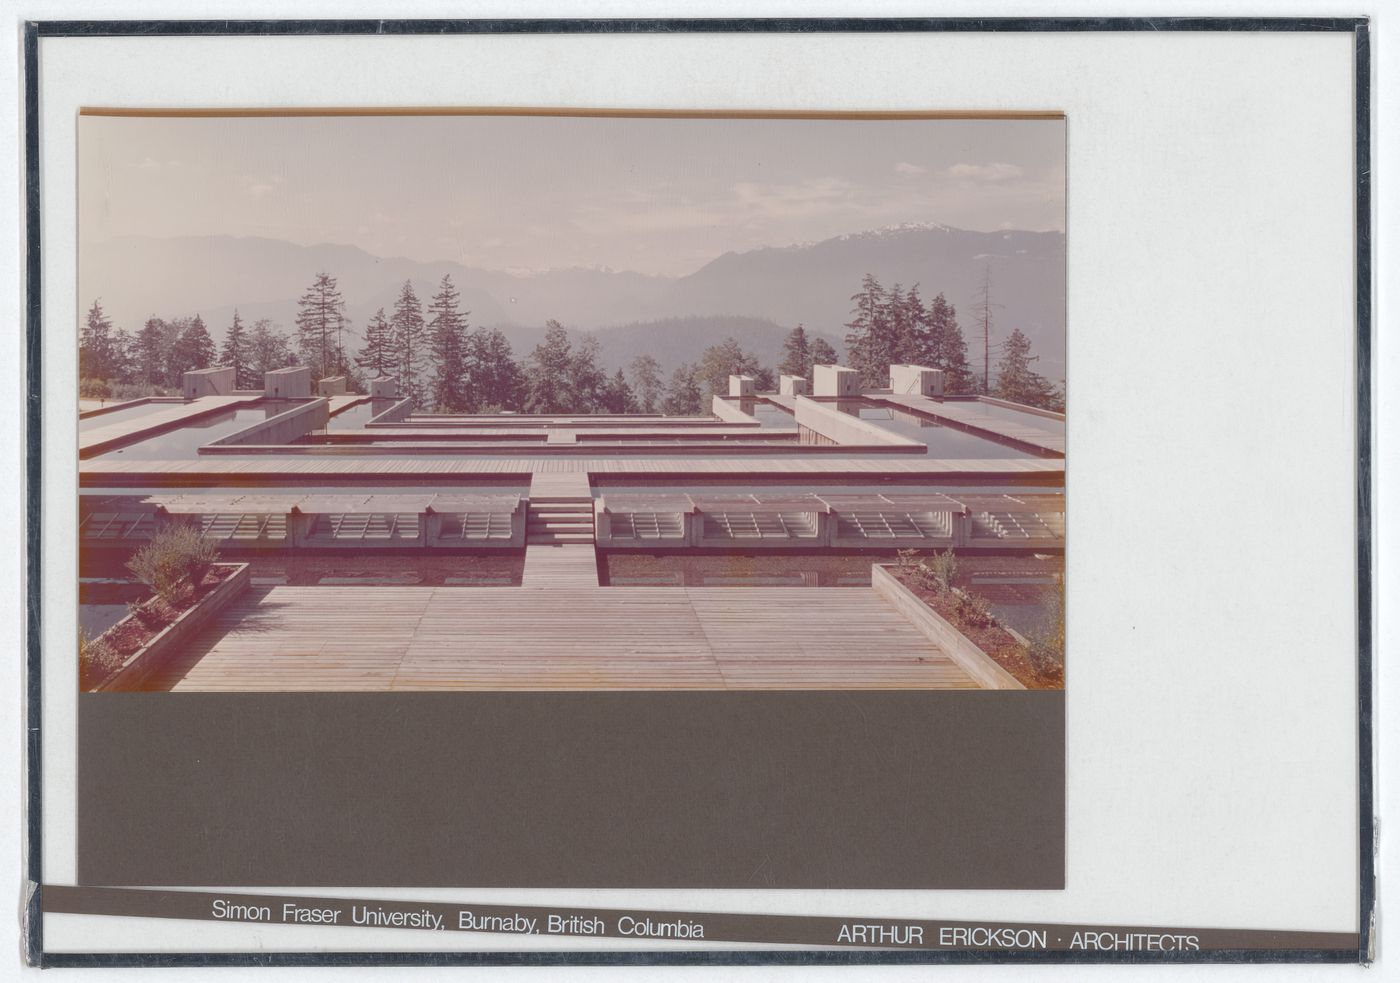 Views of Simon Fraser University, Burnaby, British Columbia